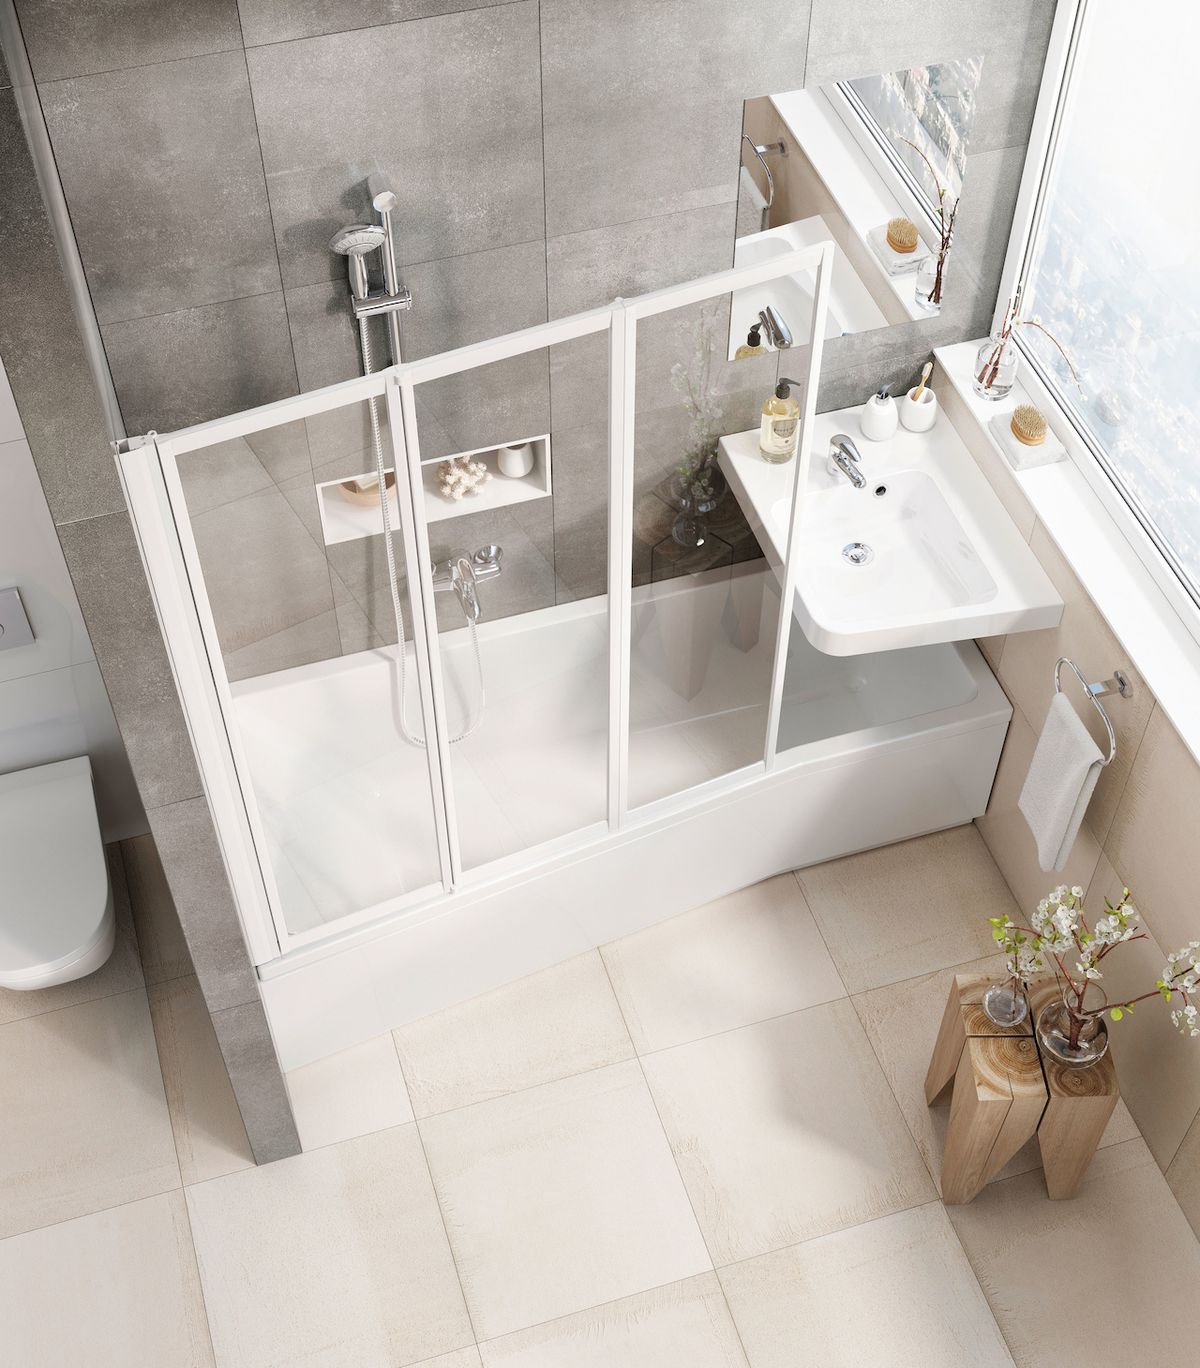 Třídílná zástěna, např. typ VS3, je použitá u vany BeHappy. Umožňuje pohodlný vstup do vany a dobře chrání koupelnu před stříkající vodou. 